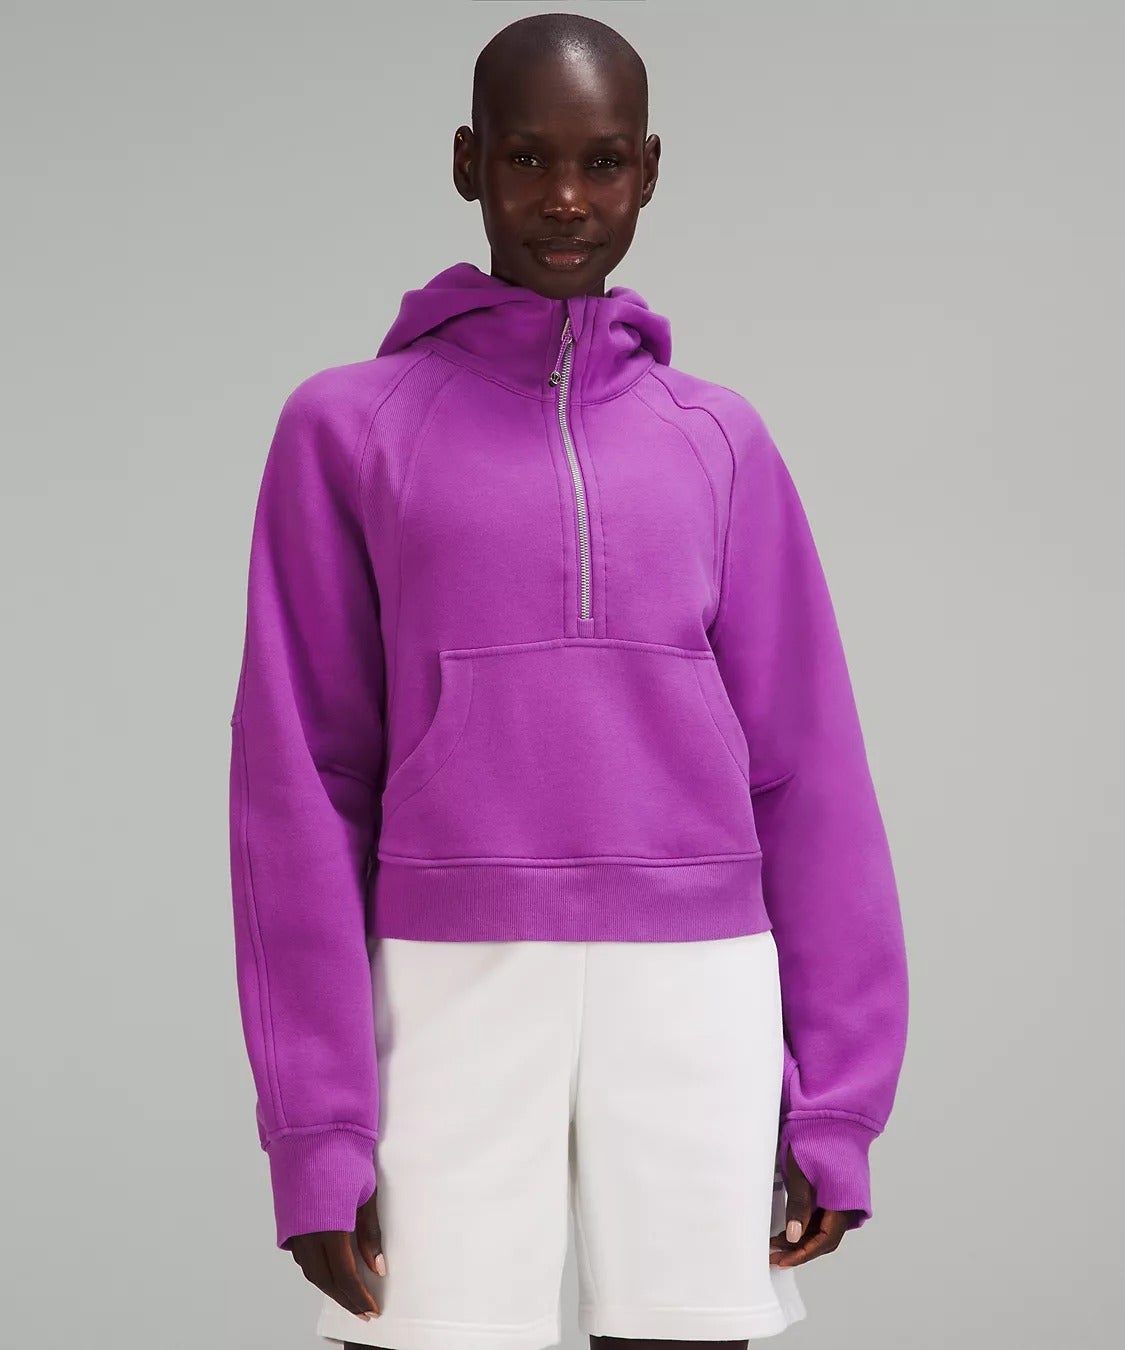 model wearing the sweatshirt in purple